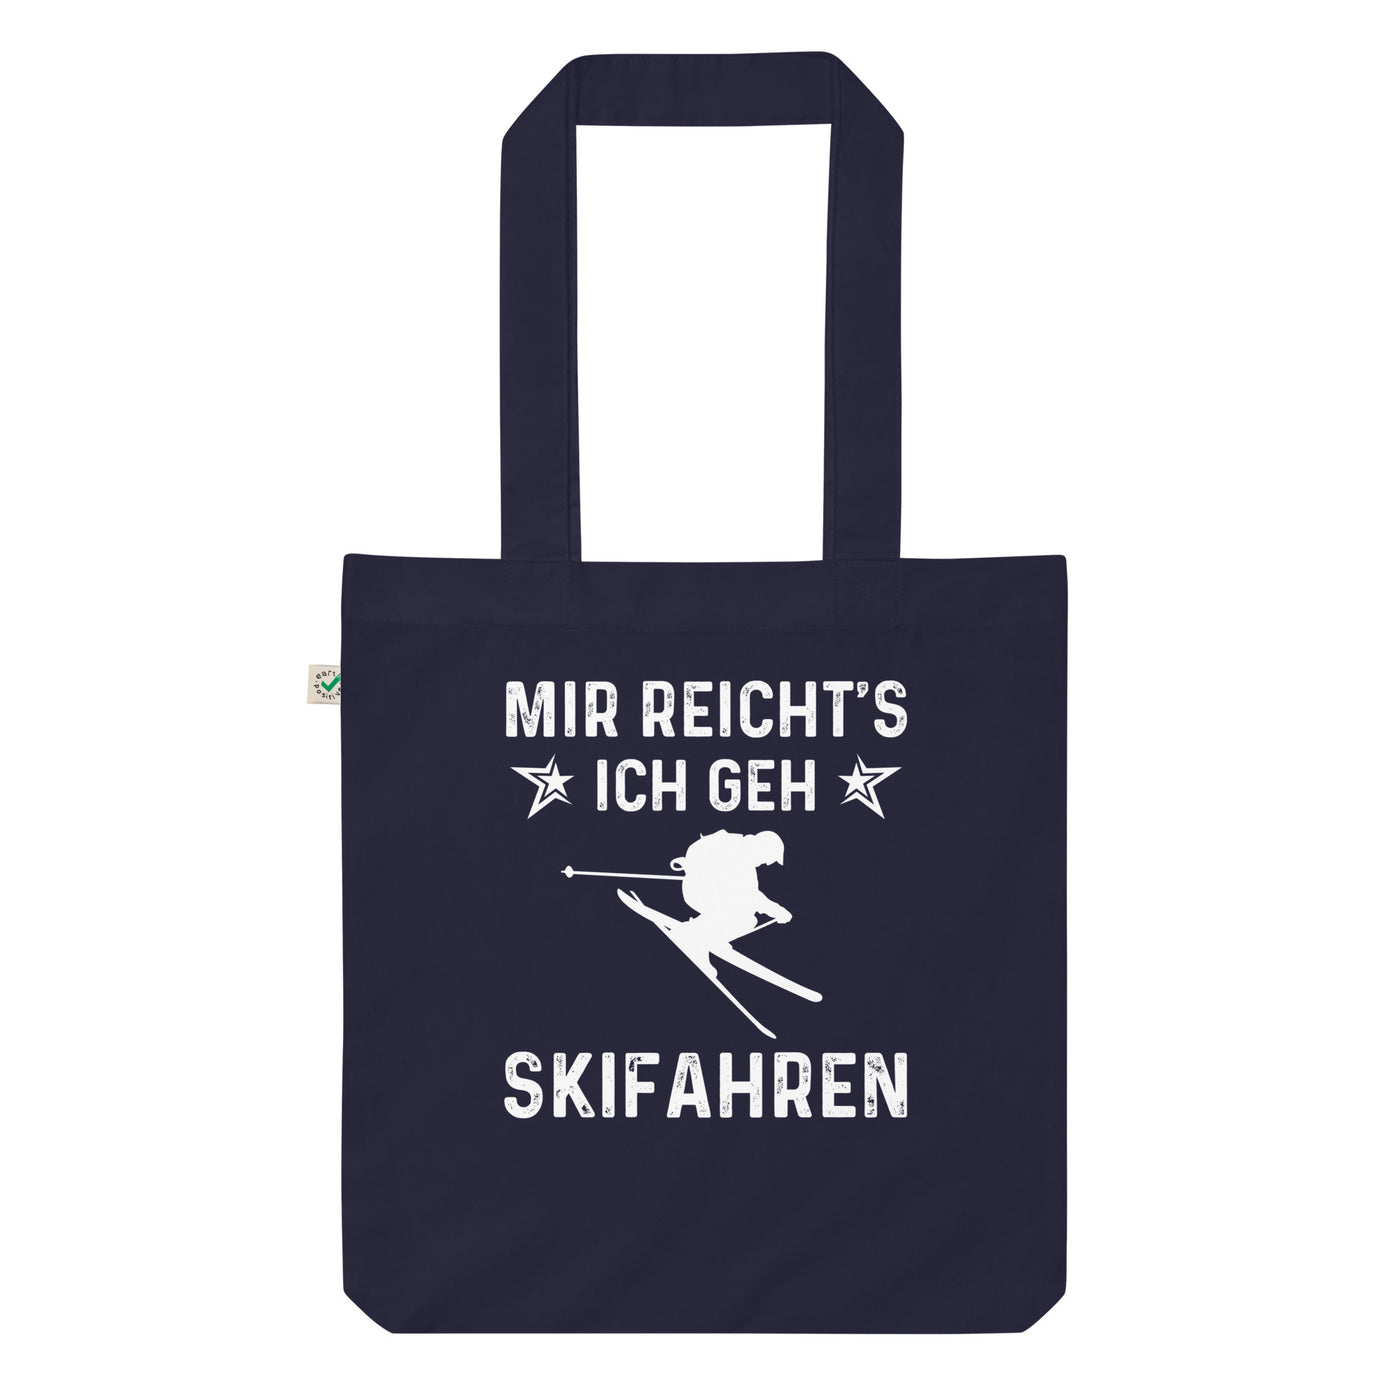 Mir Reicht'S Ich Gen Skifahren - Organic Einkaufstasche klettern ski Navy